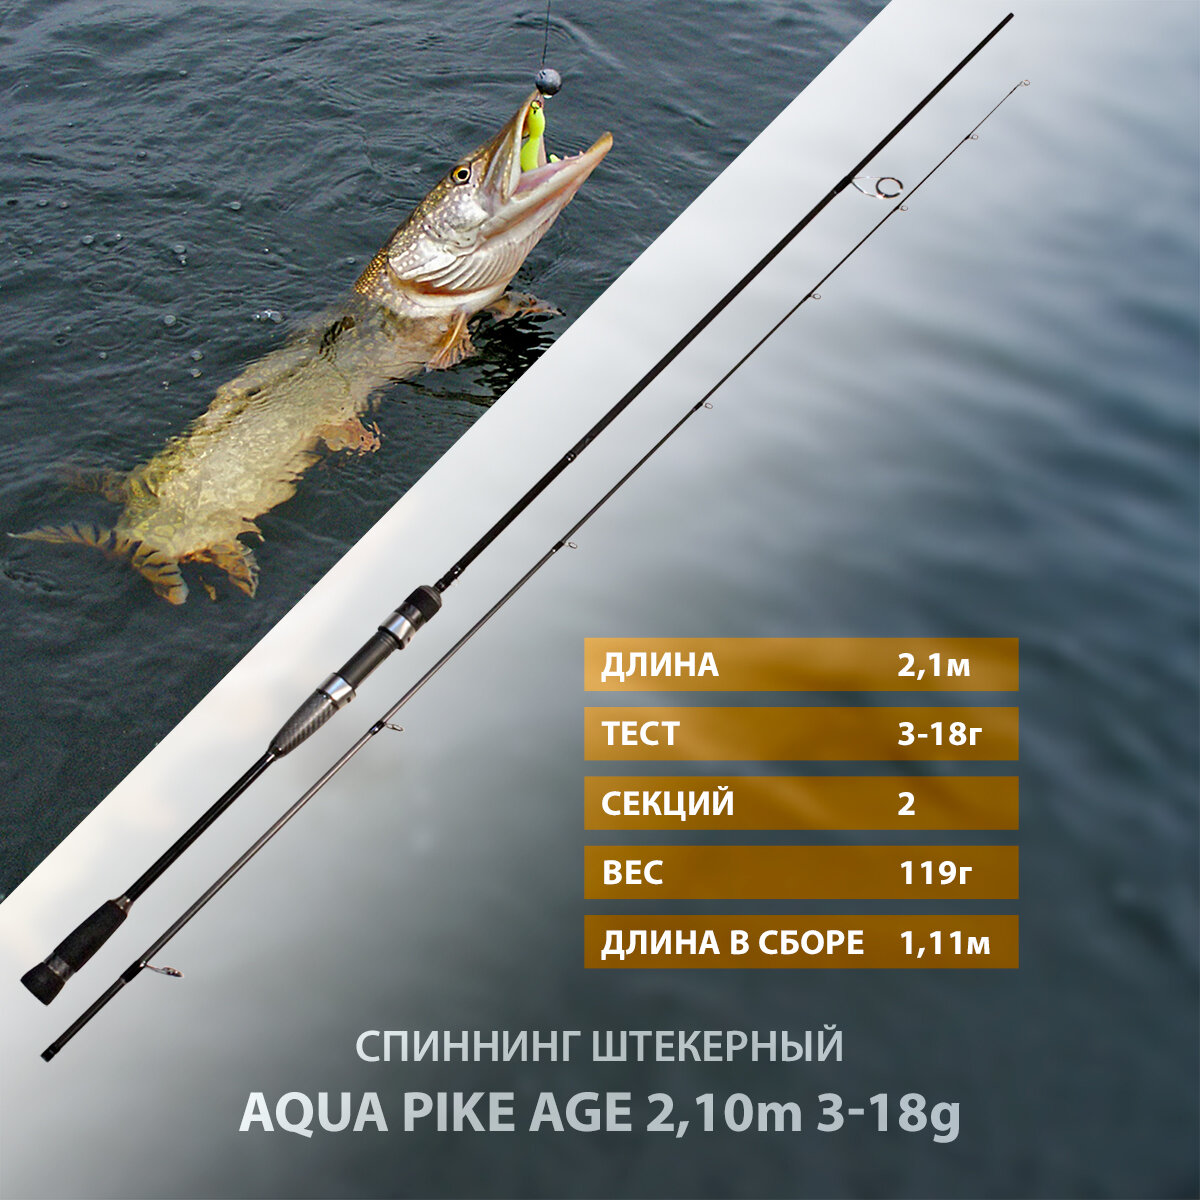 Спиннинг штекерный AQUA PIKE AGE 2.1 m, 3-18g